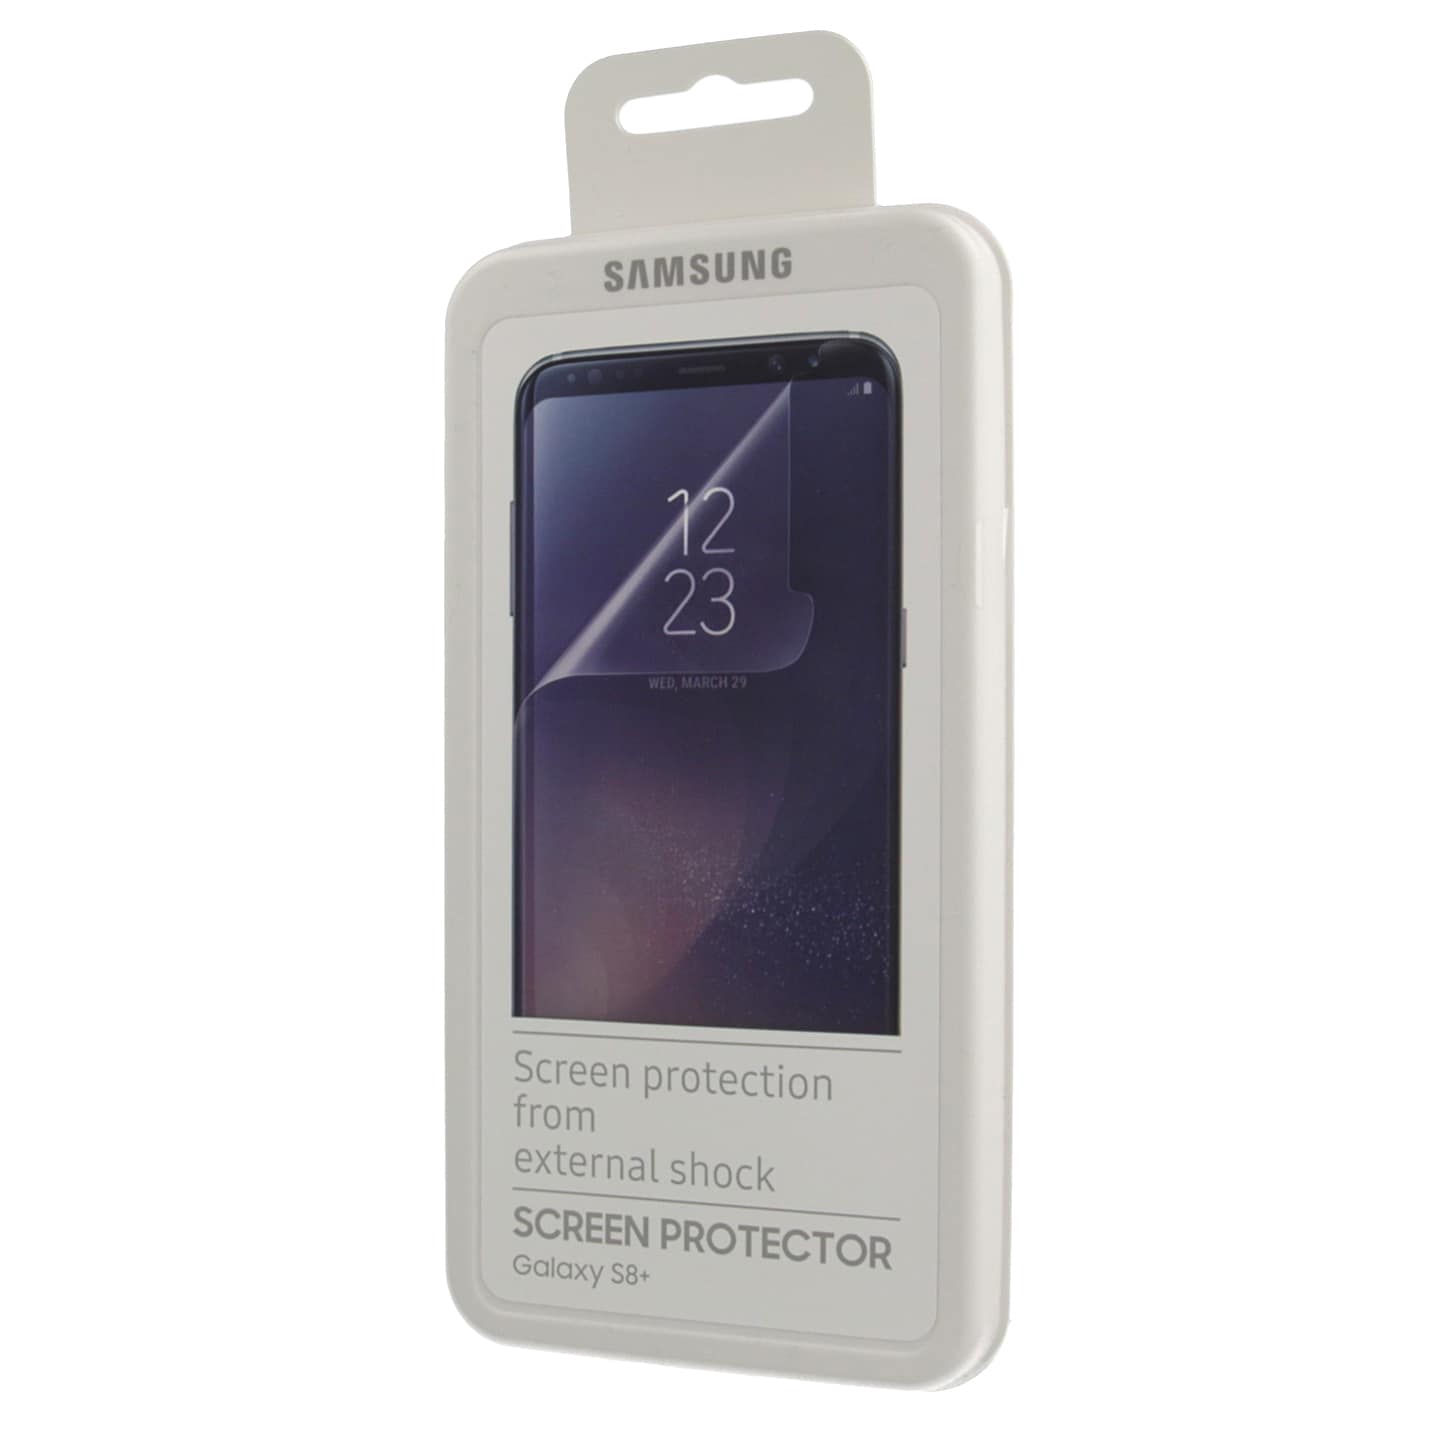 Samsung FG955 skärmskydd för Galaxy S8+